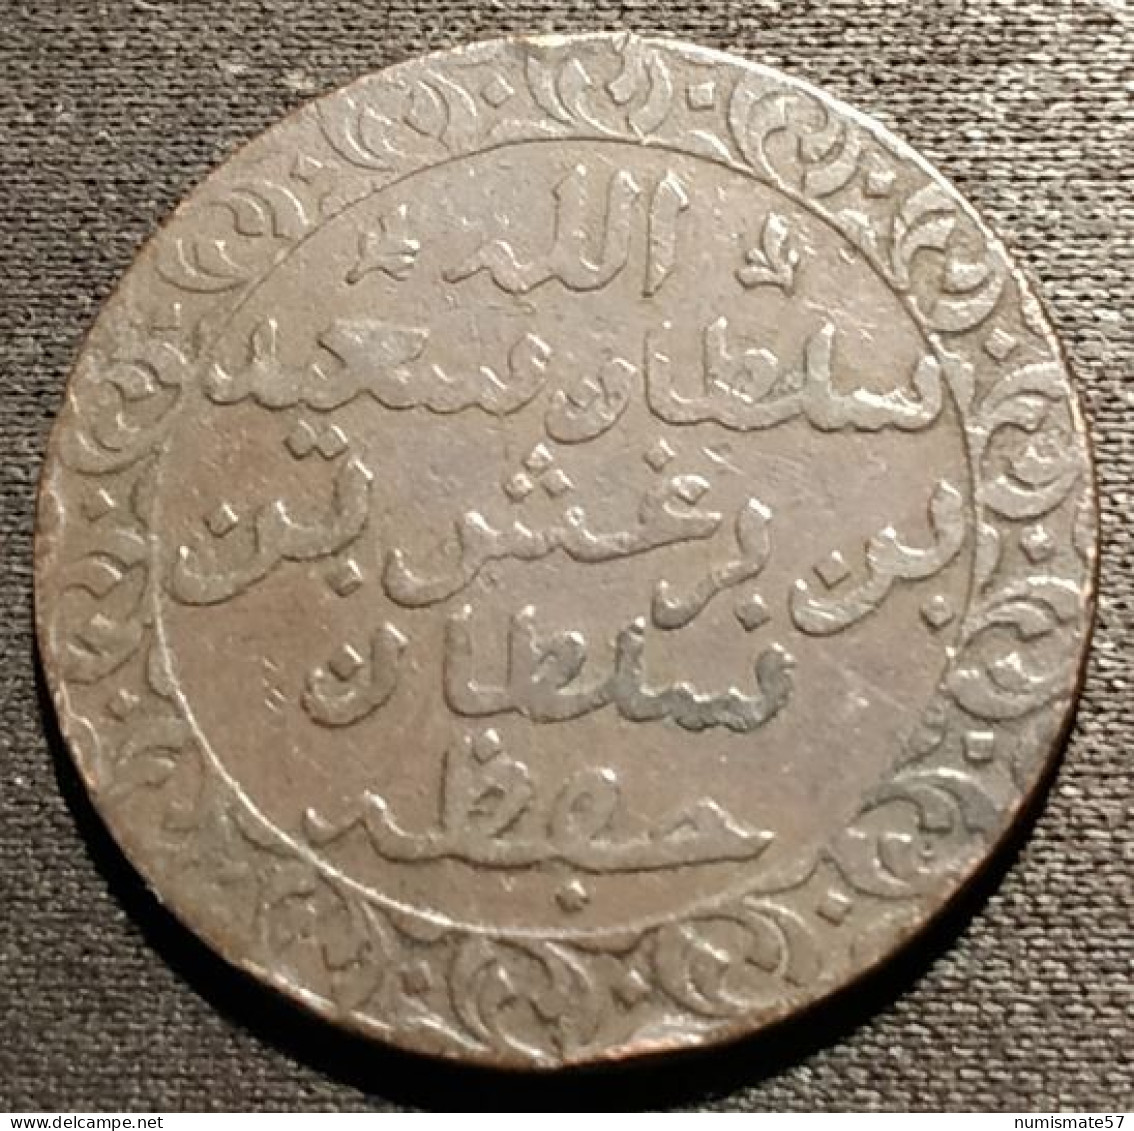 ZANZIBAR - 1 PYSA 1882 ( 1299 ) - Barghash Ibn Sa'id - KM 1 - Tanzanía